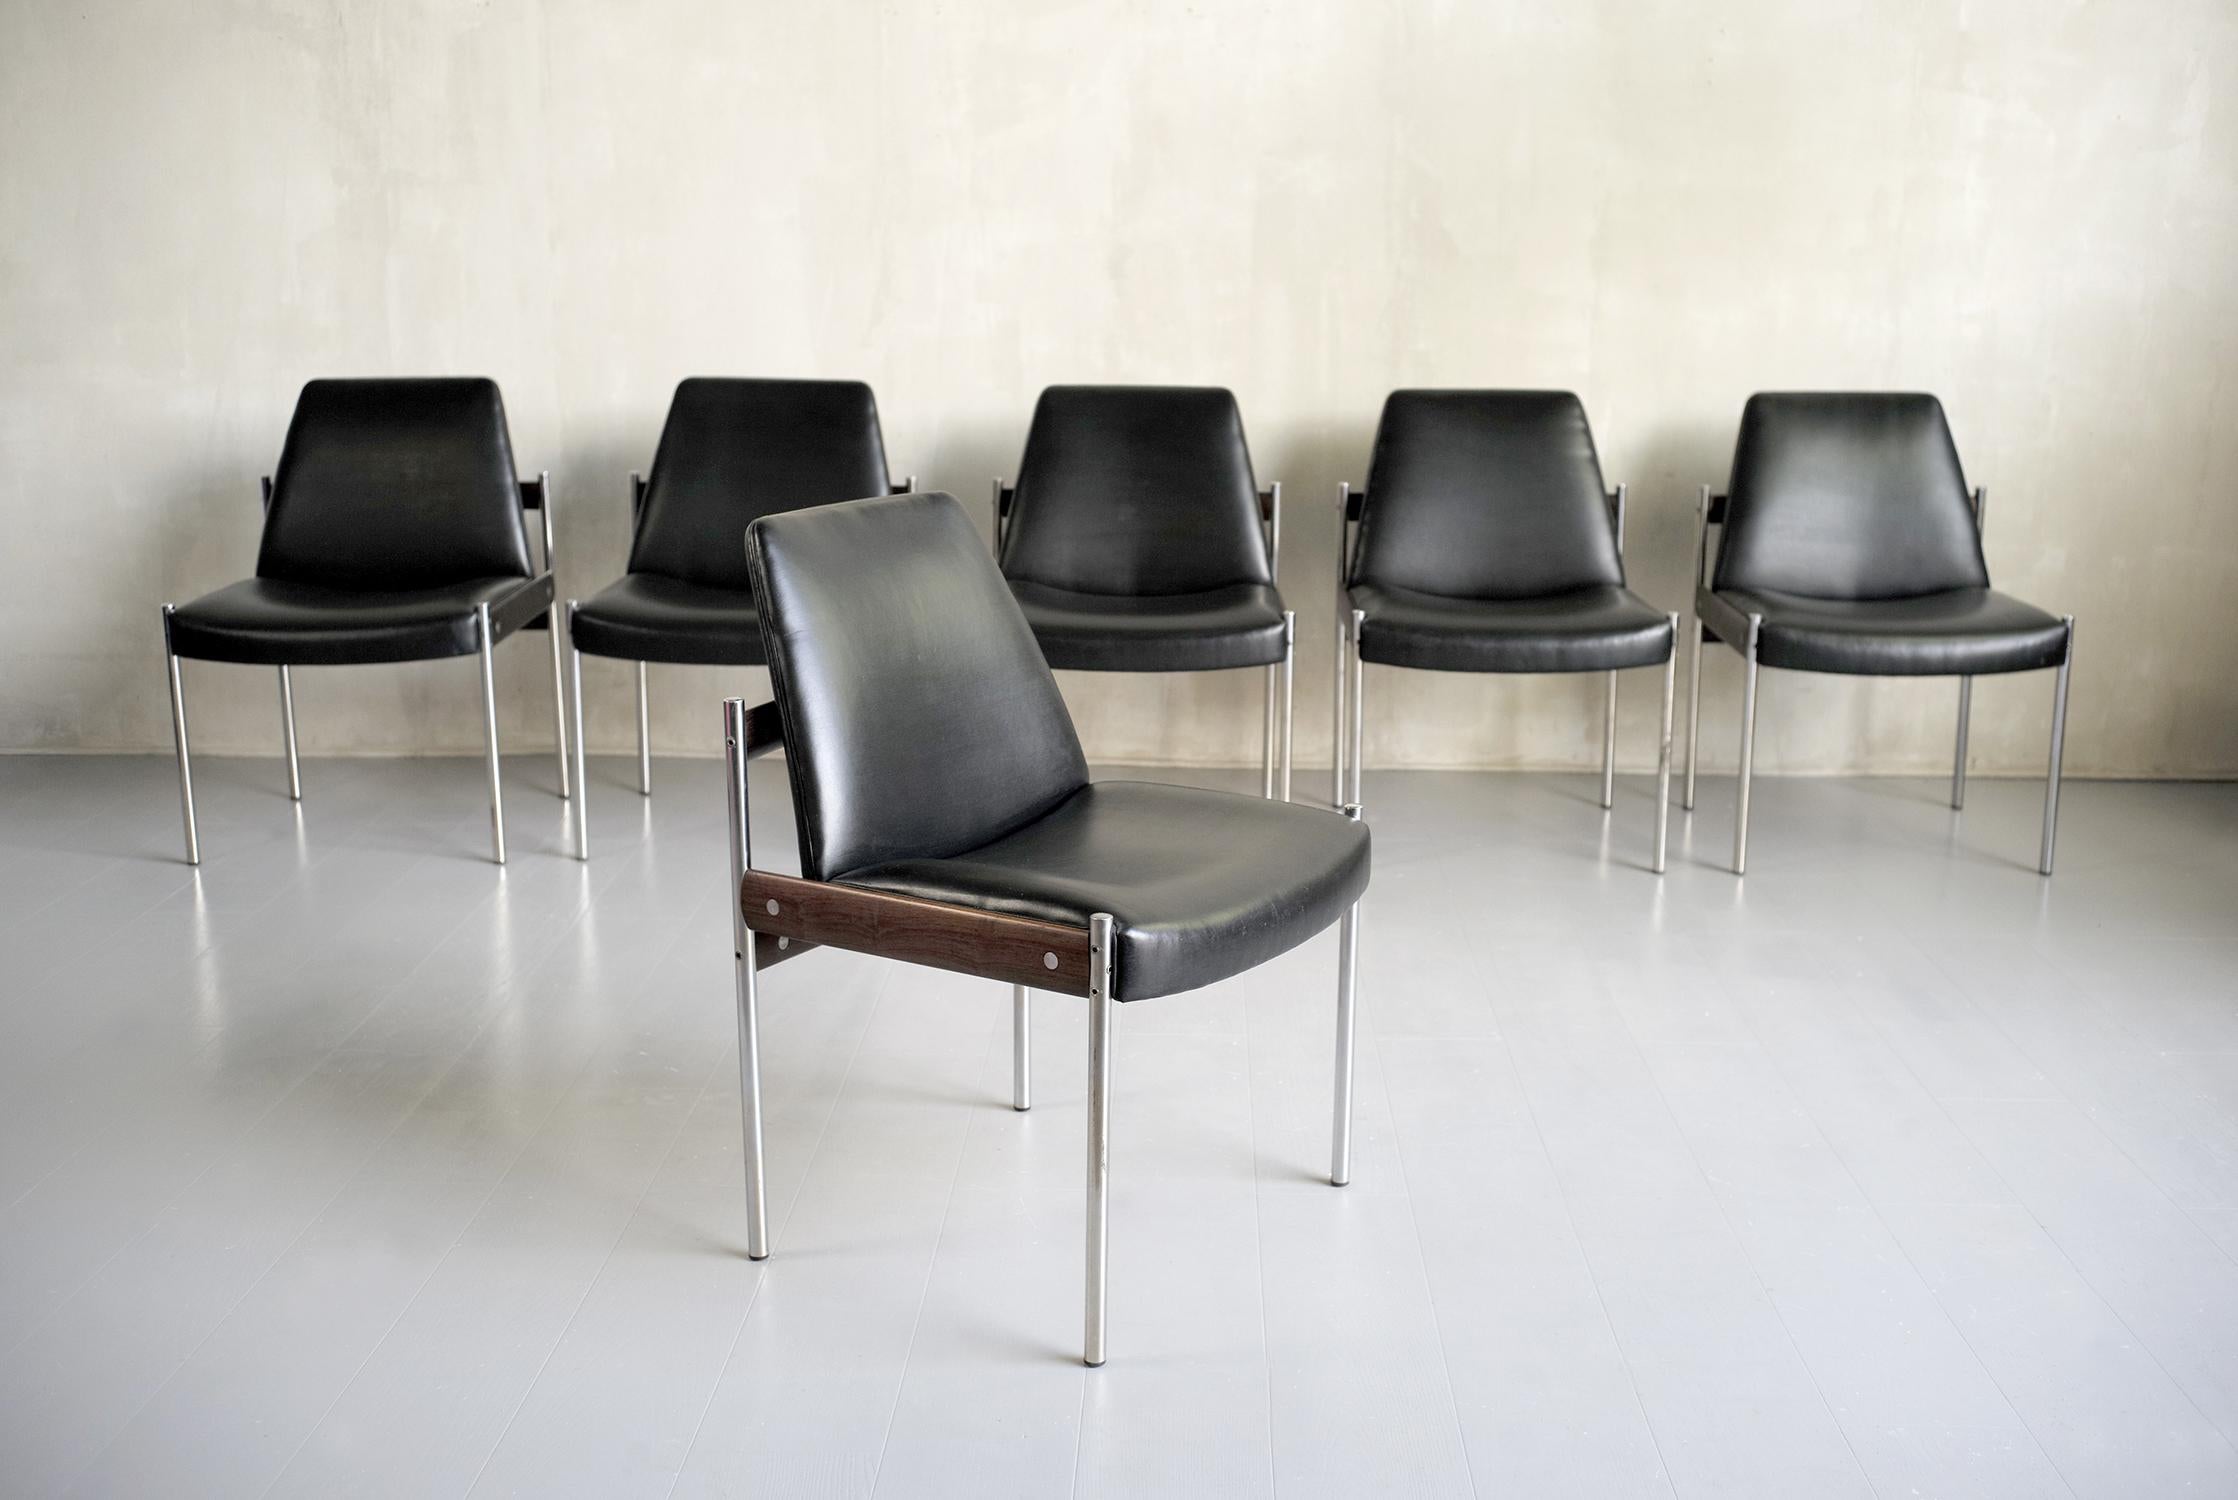 Série de 6 chaises en cuir noir et bois de rose de Sven Ivar Dysthe pour Dokka Mobler, Norvège 1960. Référencées sous le numéro 3001, ces chaises ont remporté le Prix international du design 1961. (document d'archive, mairie de Wuppertal, 1961).